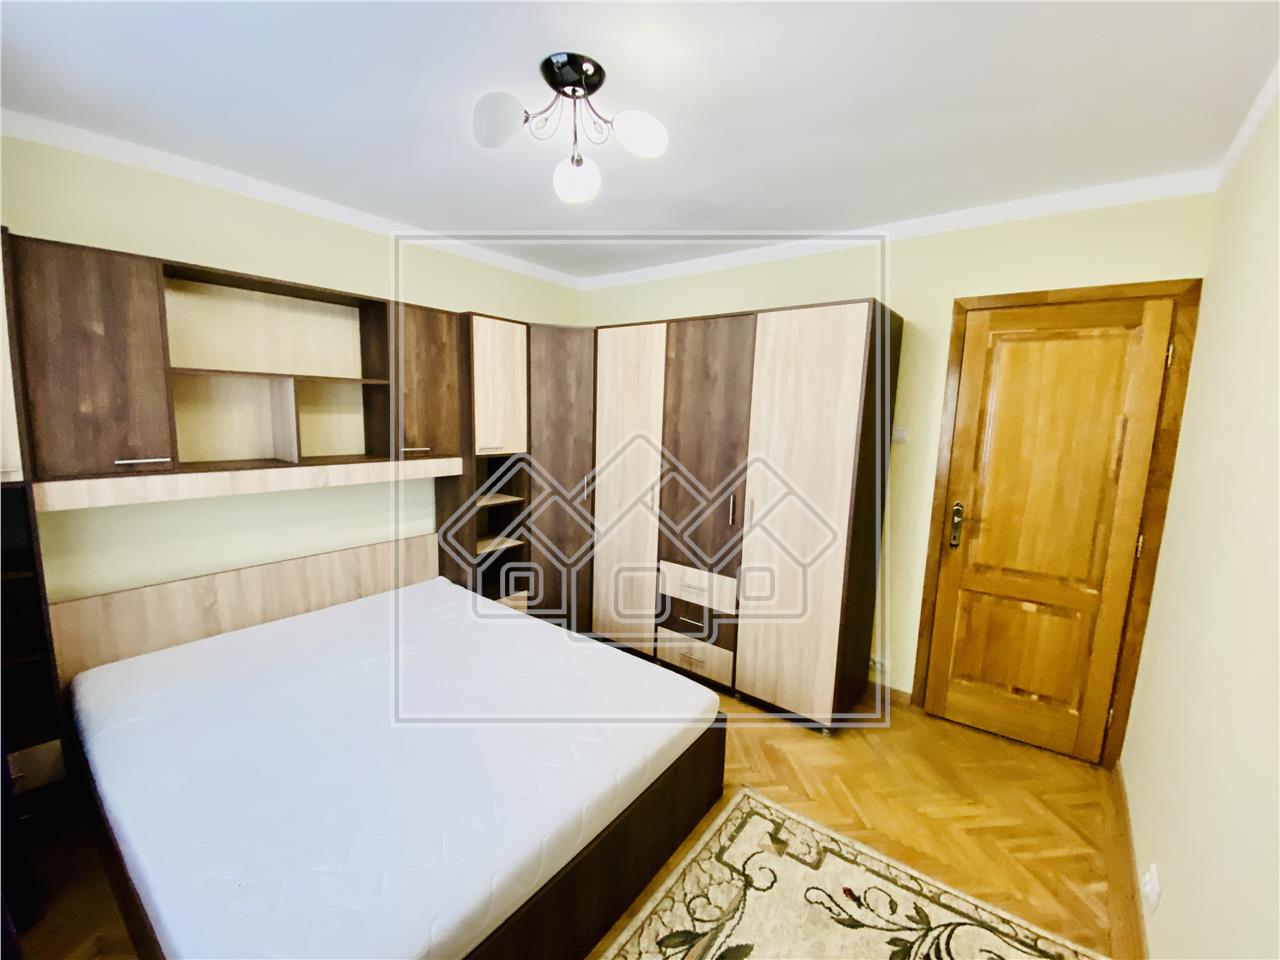 Apartament de inchiriat in Sibiu -2 camere-mobilat utilat- C.Dumbravii